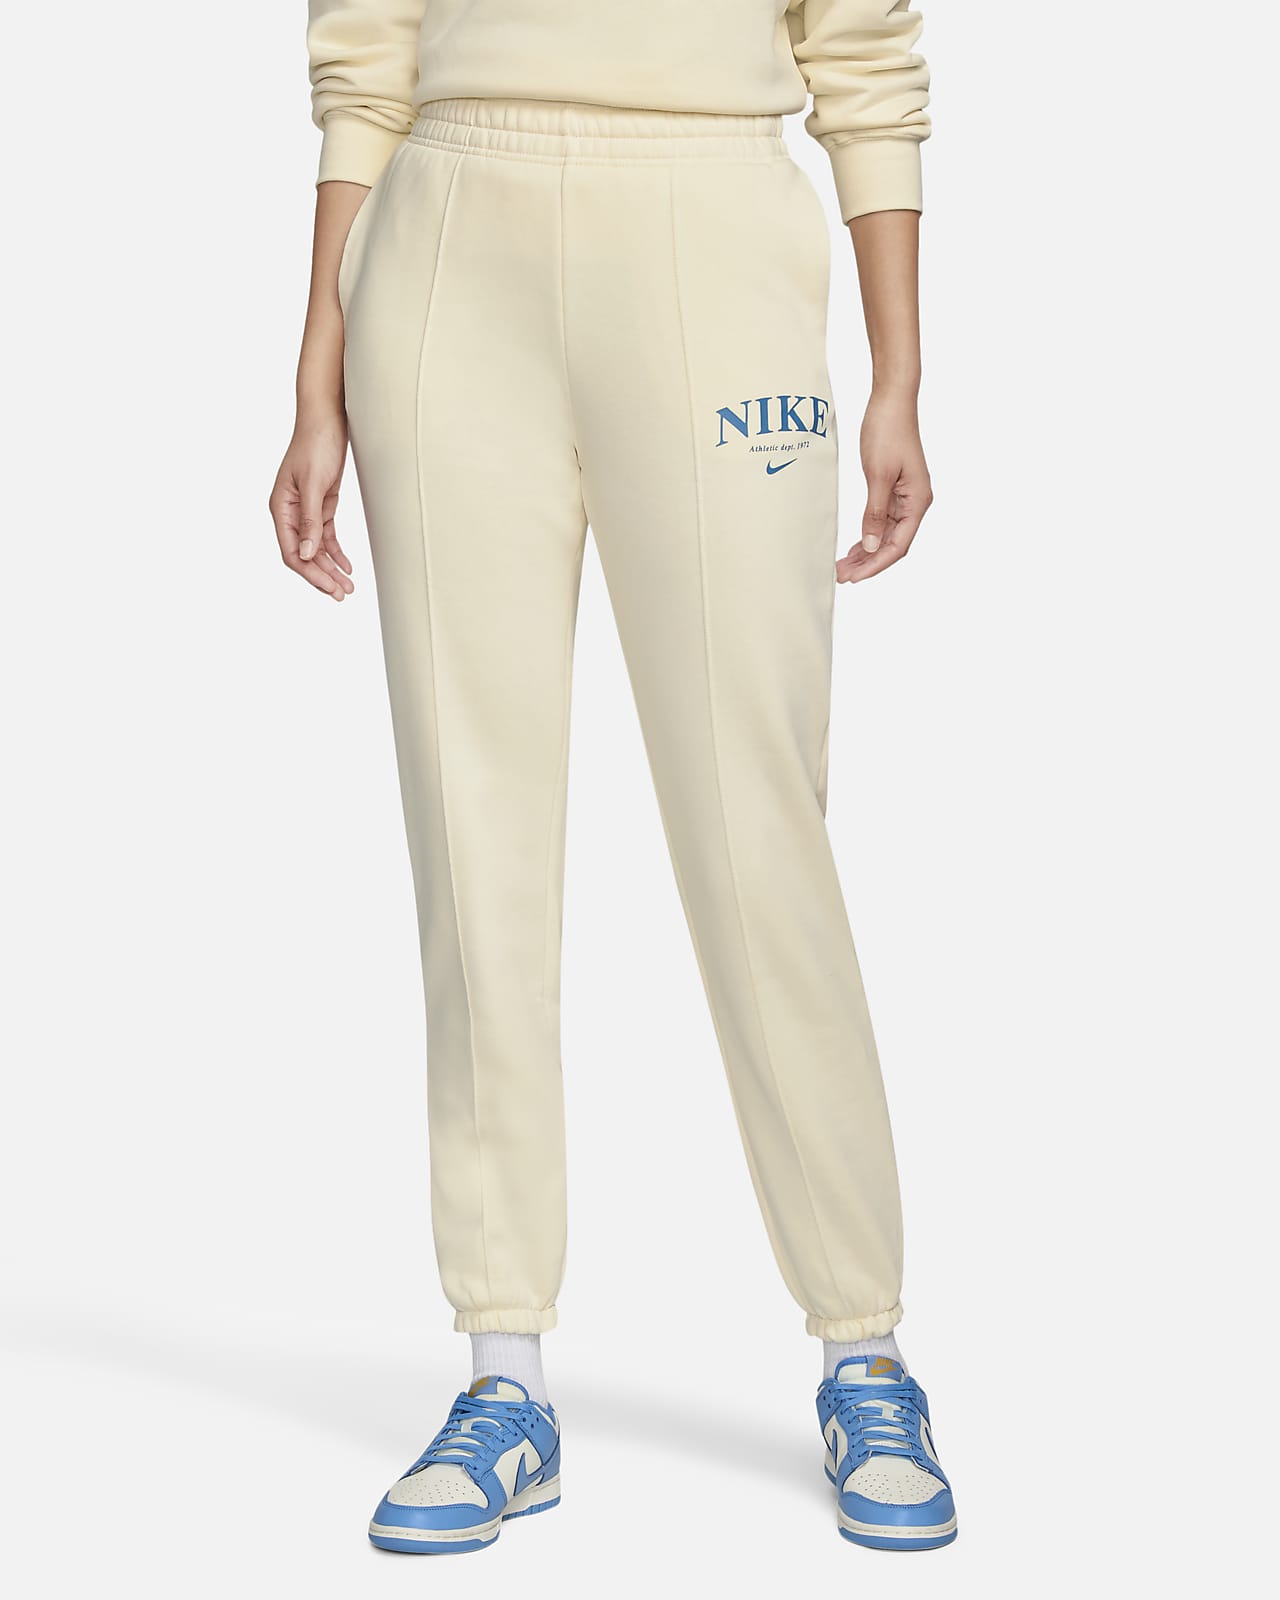 Nike Sportswear Collection Essentials Women's Fleece Trousers